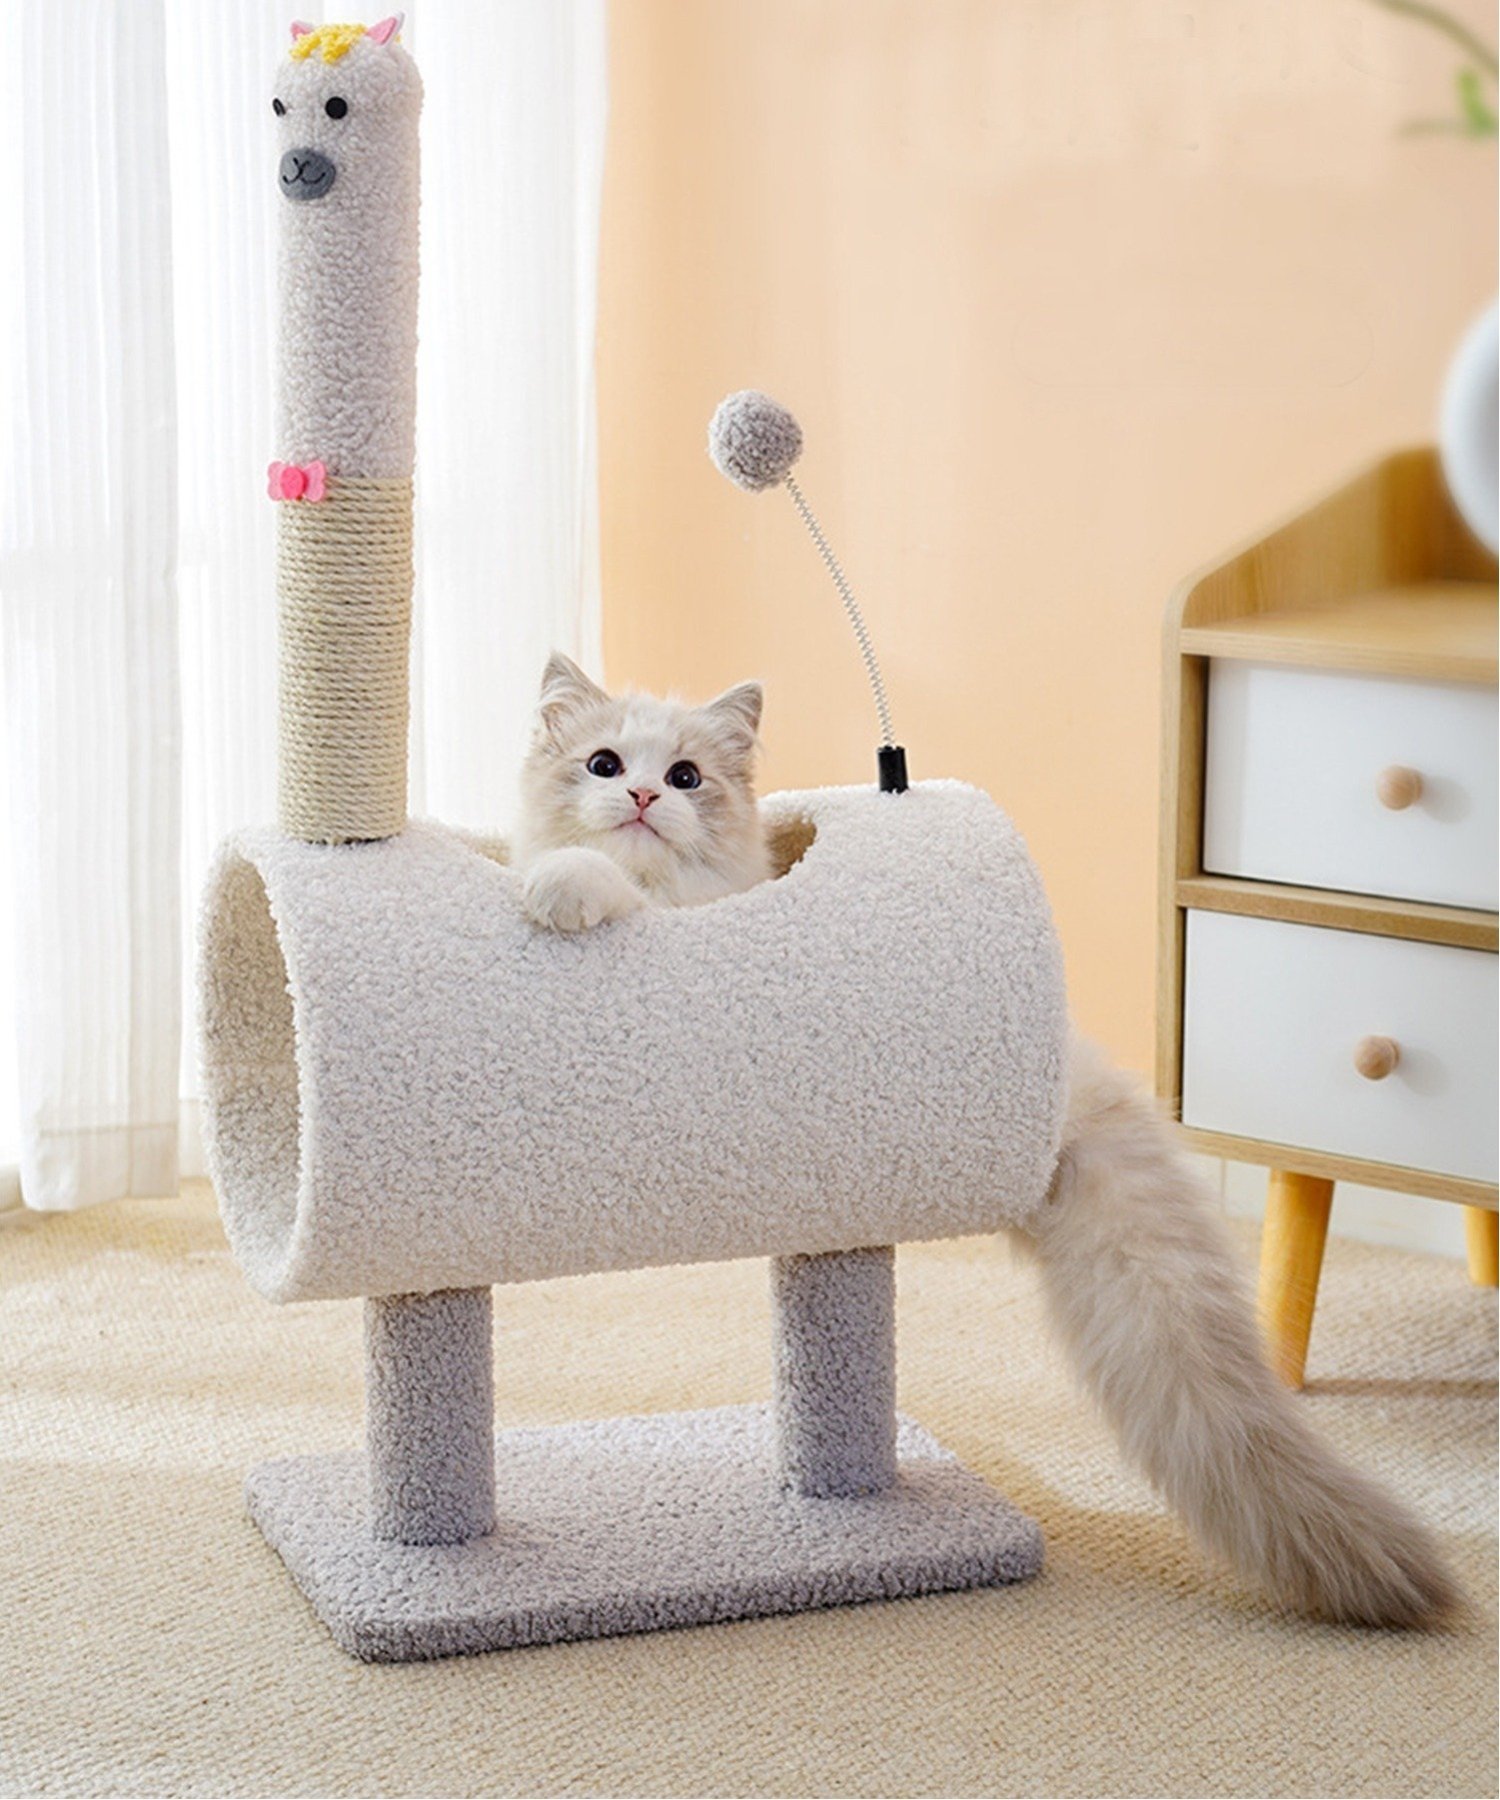 aimoha　home　(W)動物形キャットタワー猫用おもちゃ